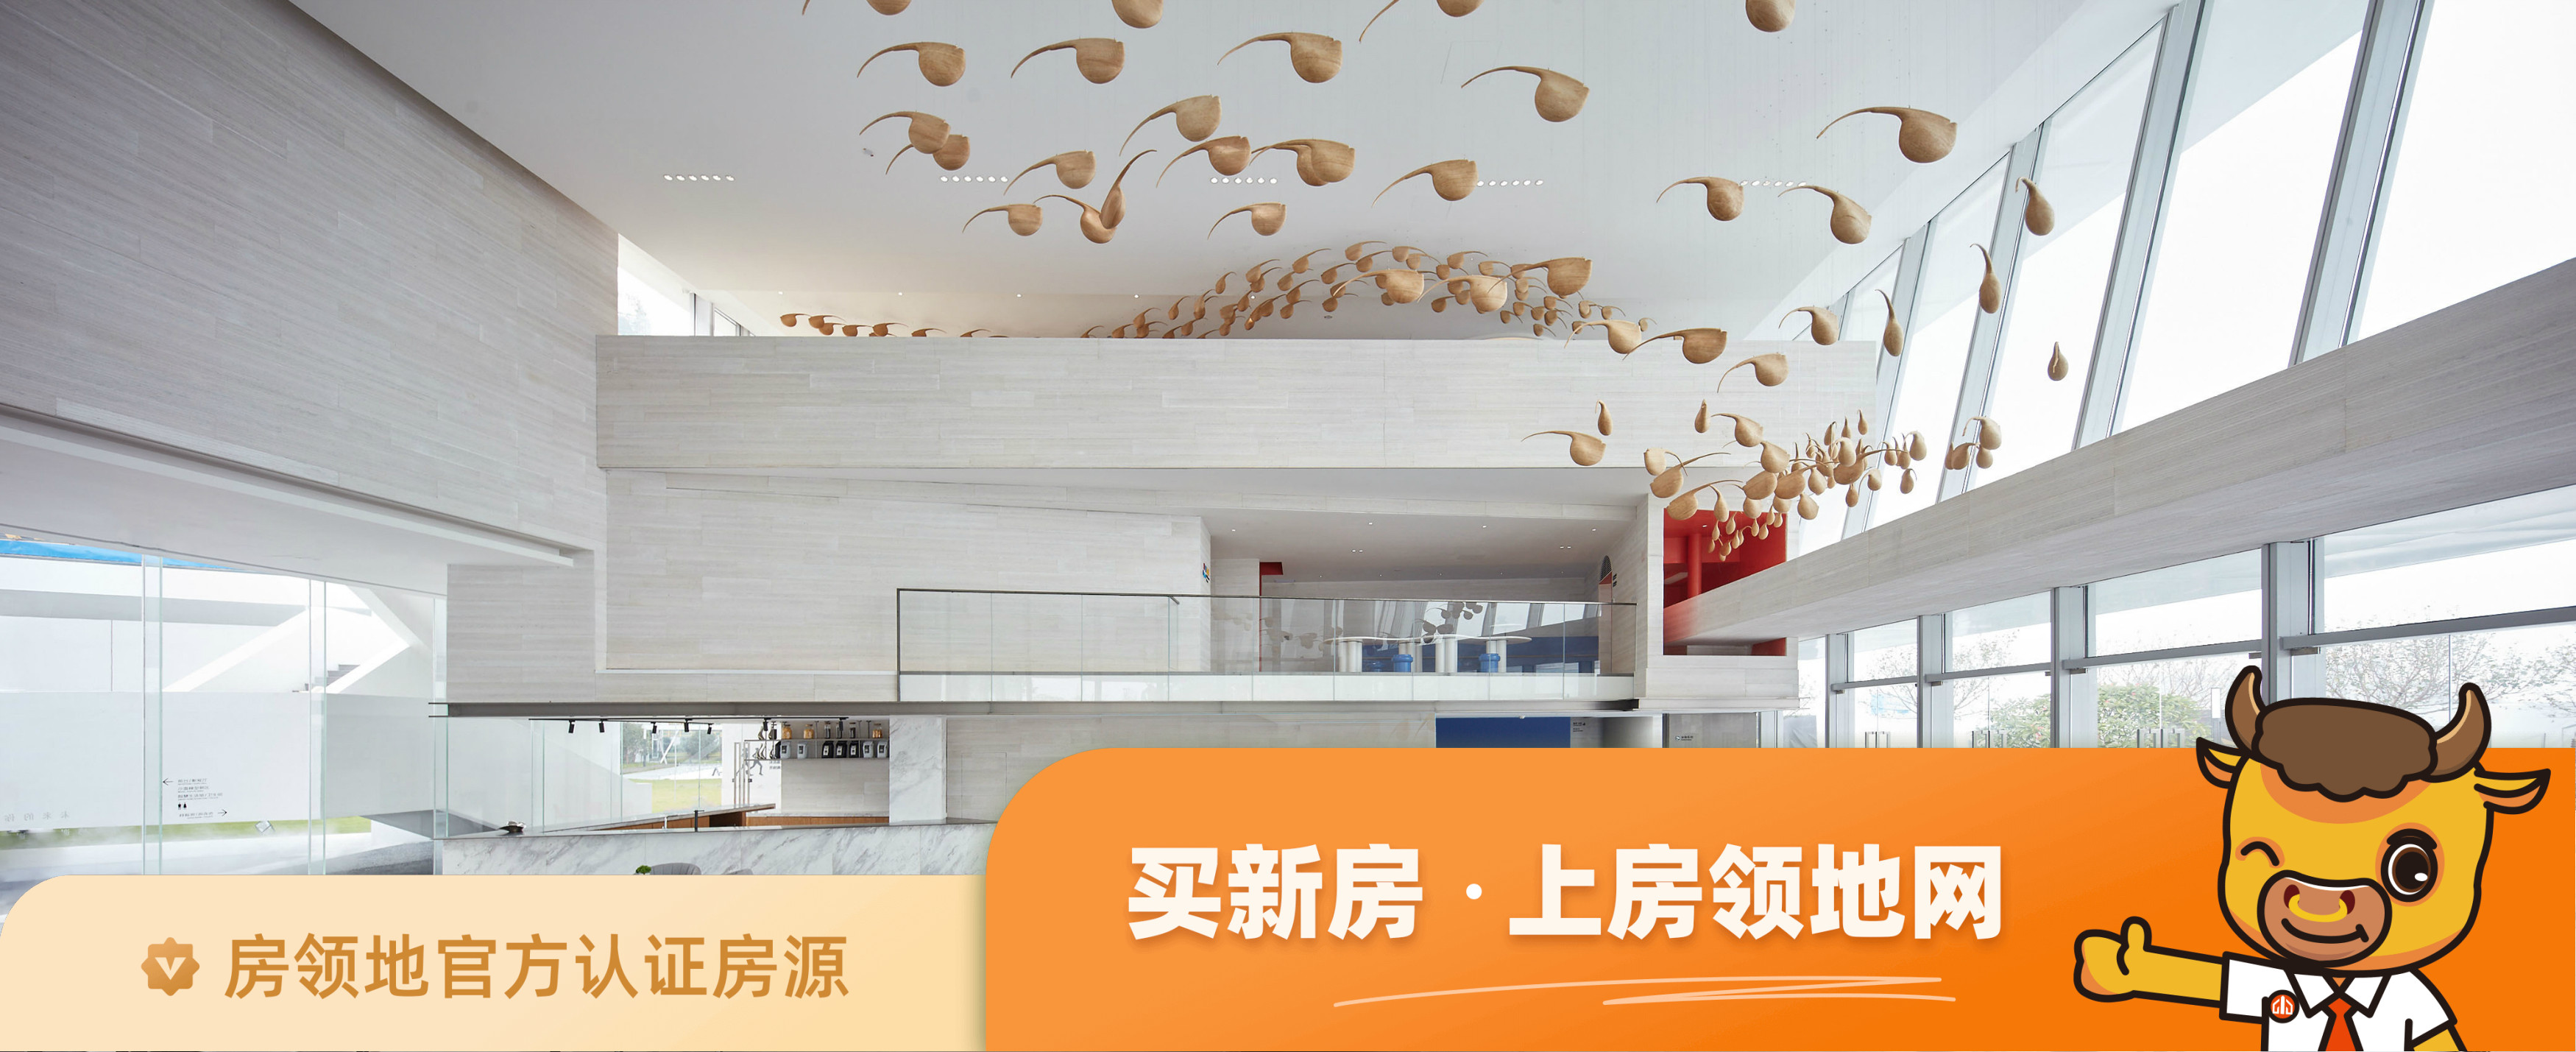 阳江美的未来中心均价为6200元每平米